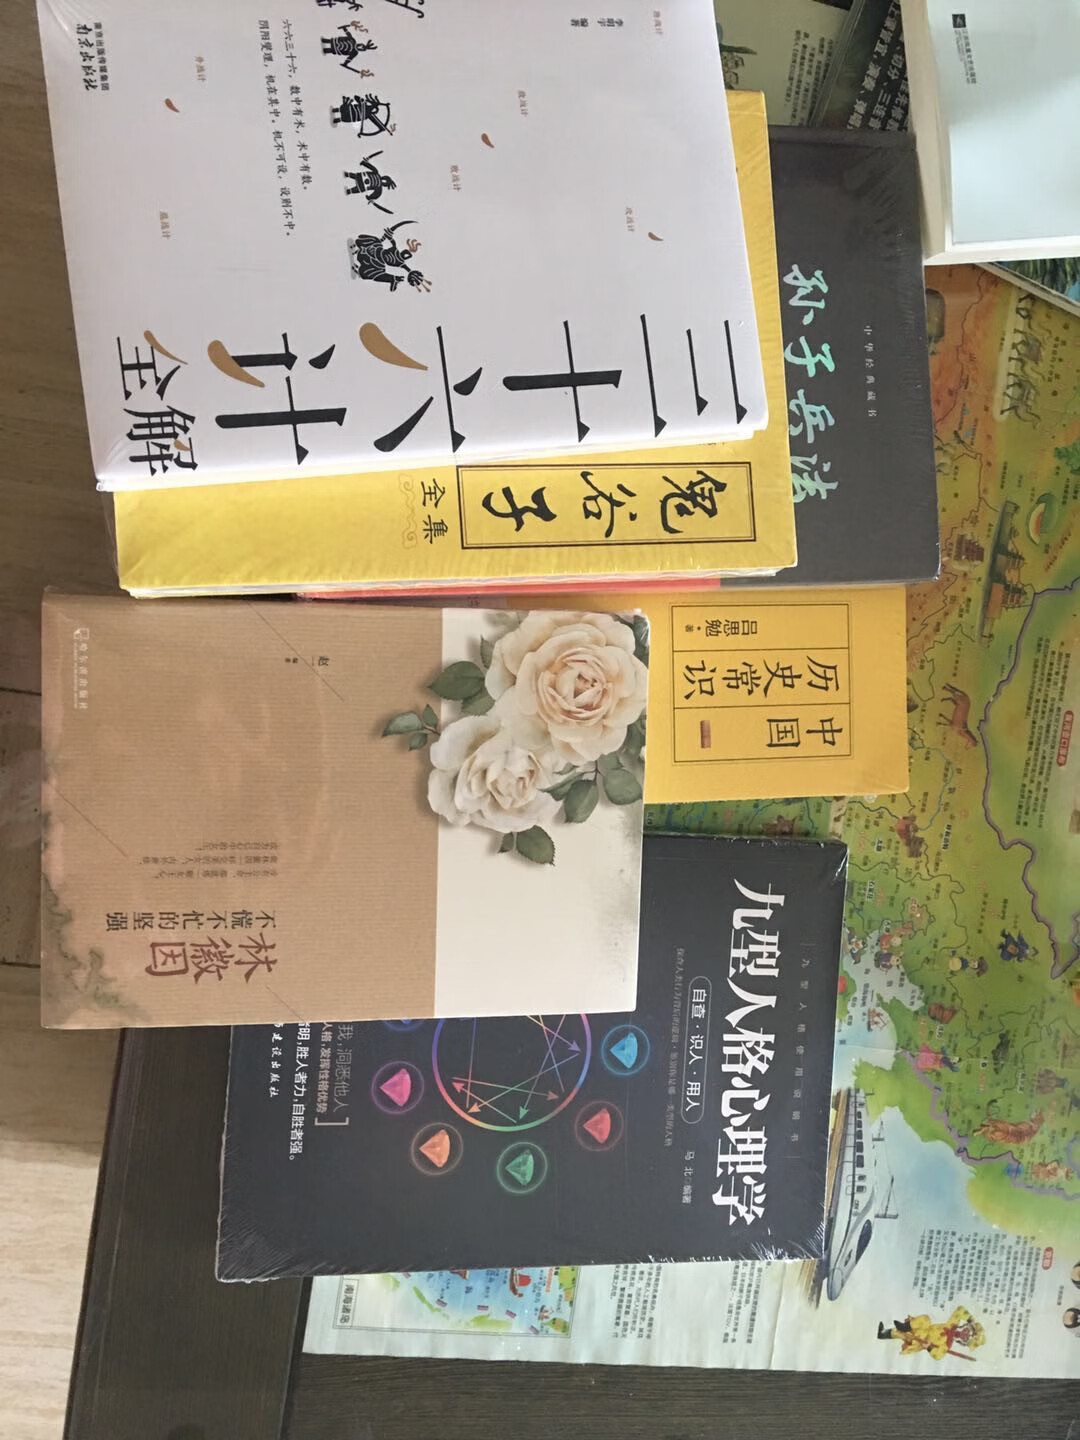 有塑封16开，三本一套内容丰富，很透彻地了解中国文化，值得推荐。